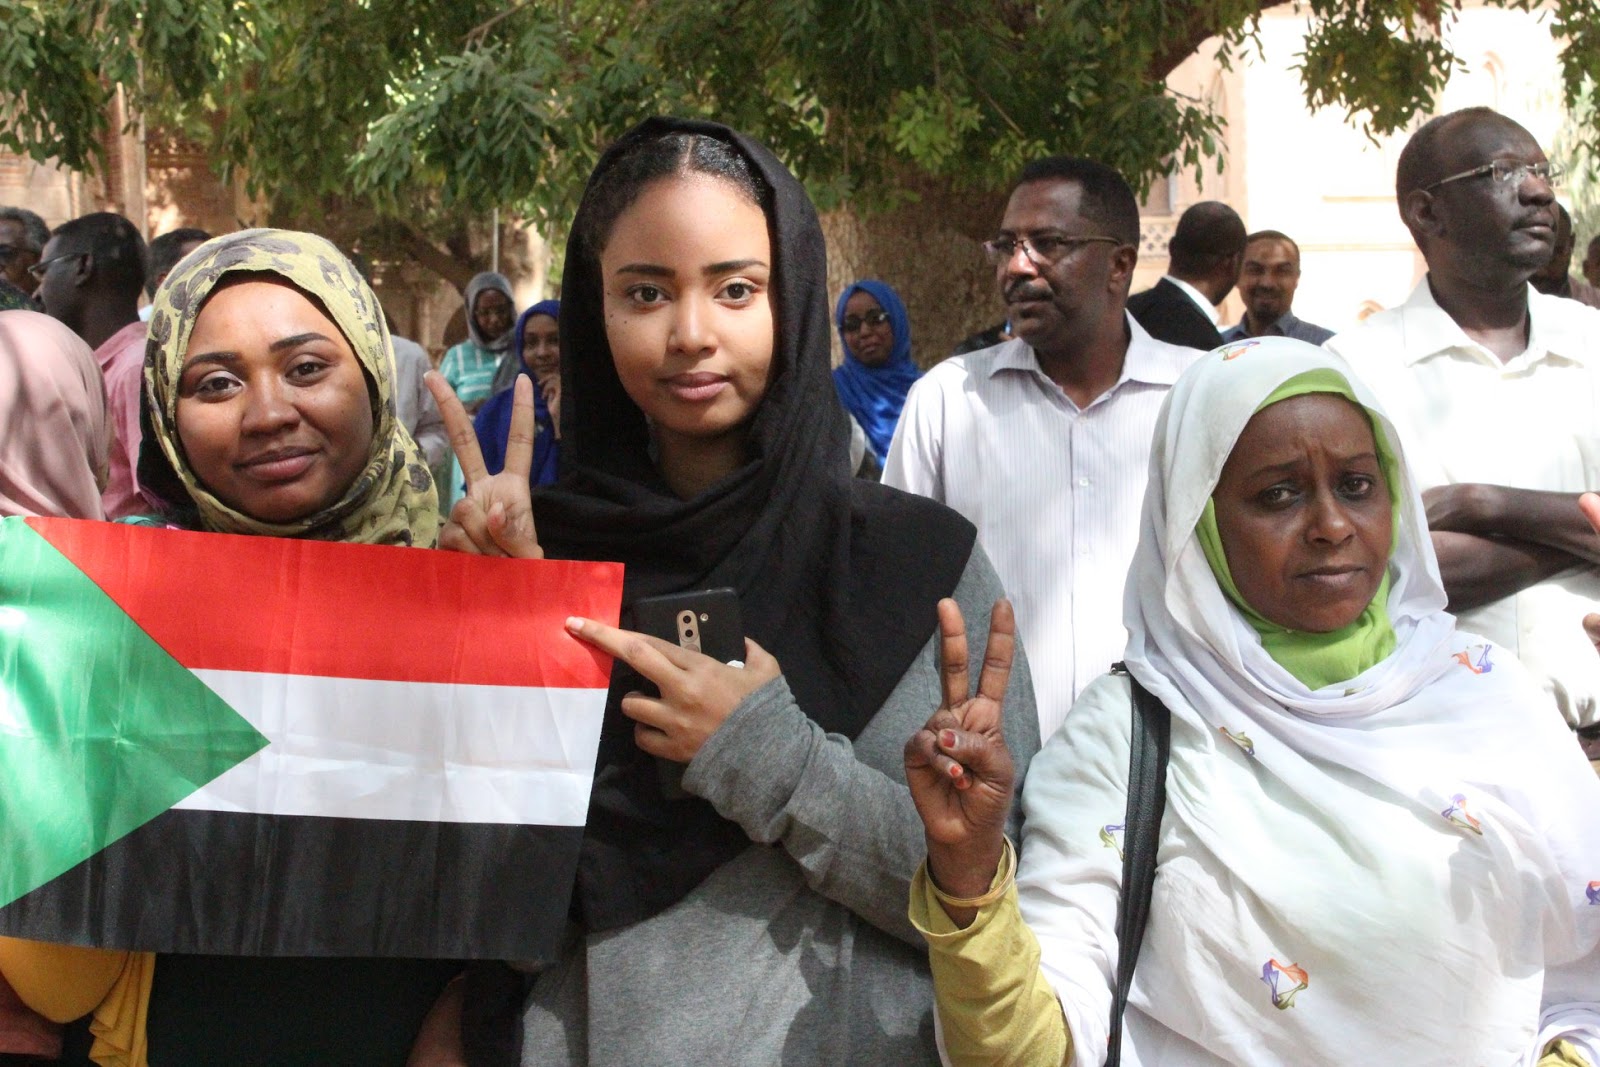 نتيجة القبول للجامعات السودانية 2021